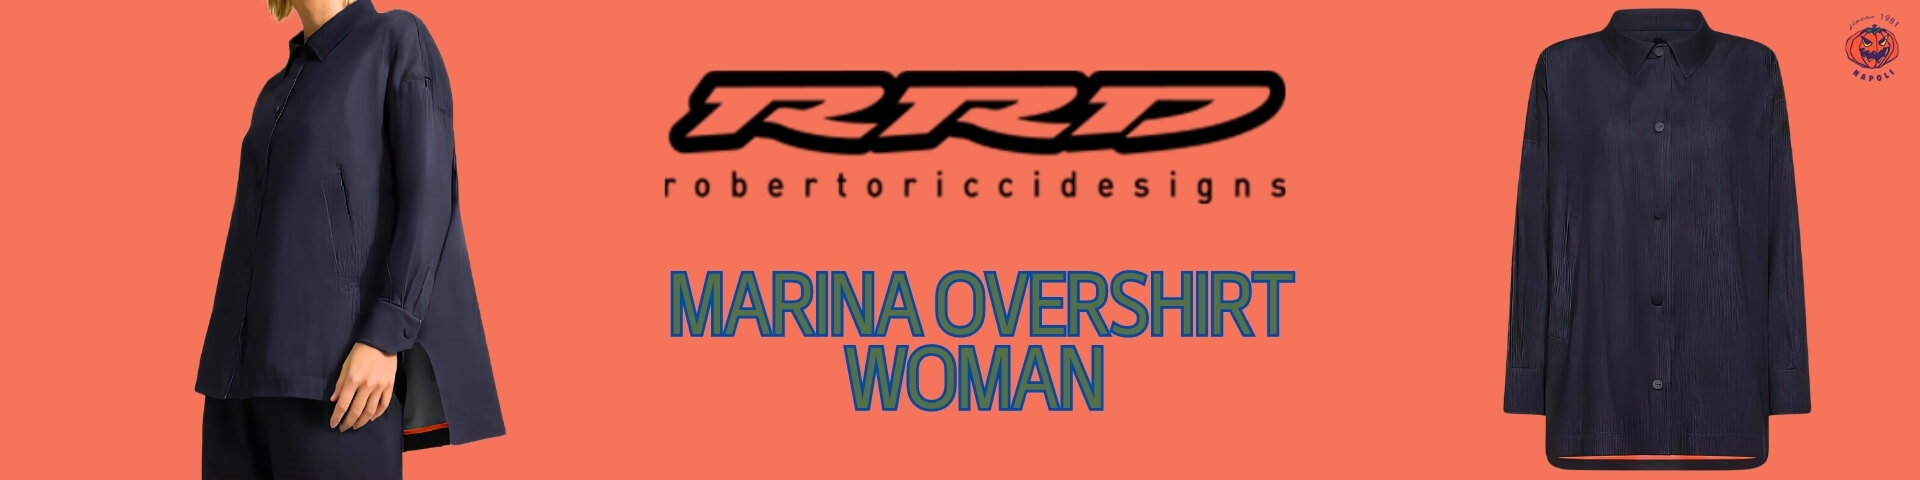 Marina-Overshirt-Woman